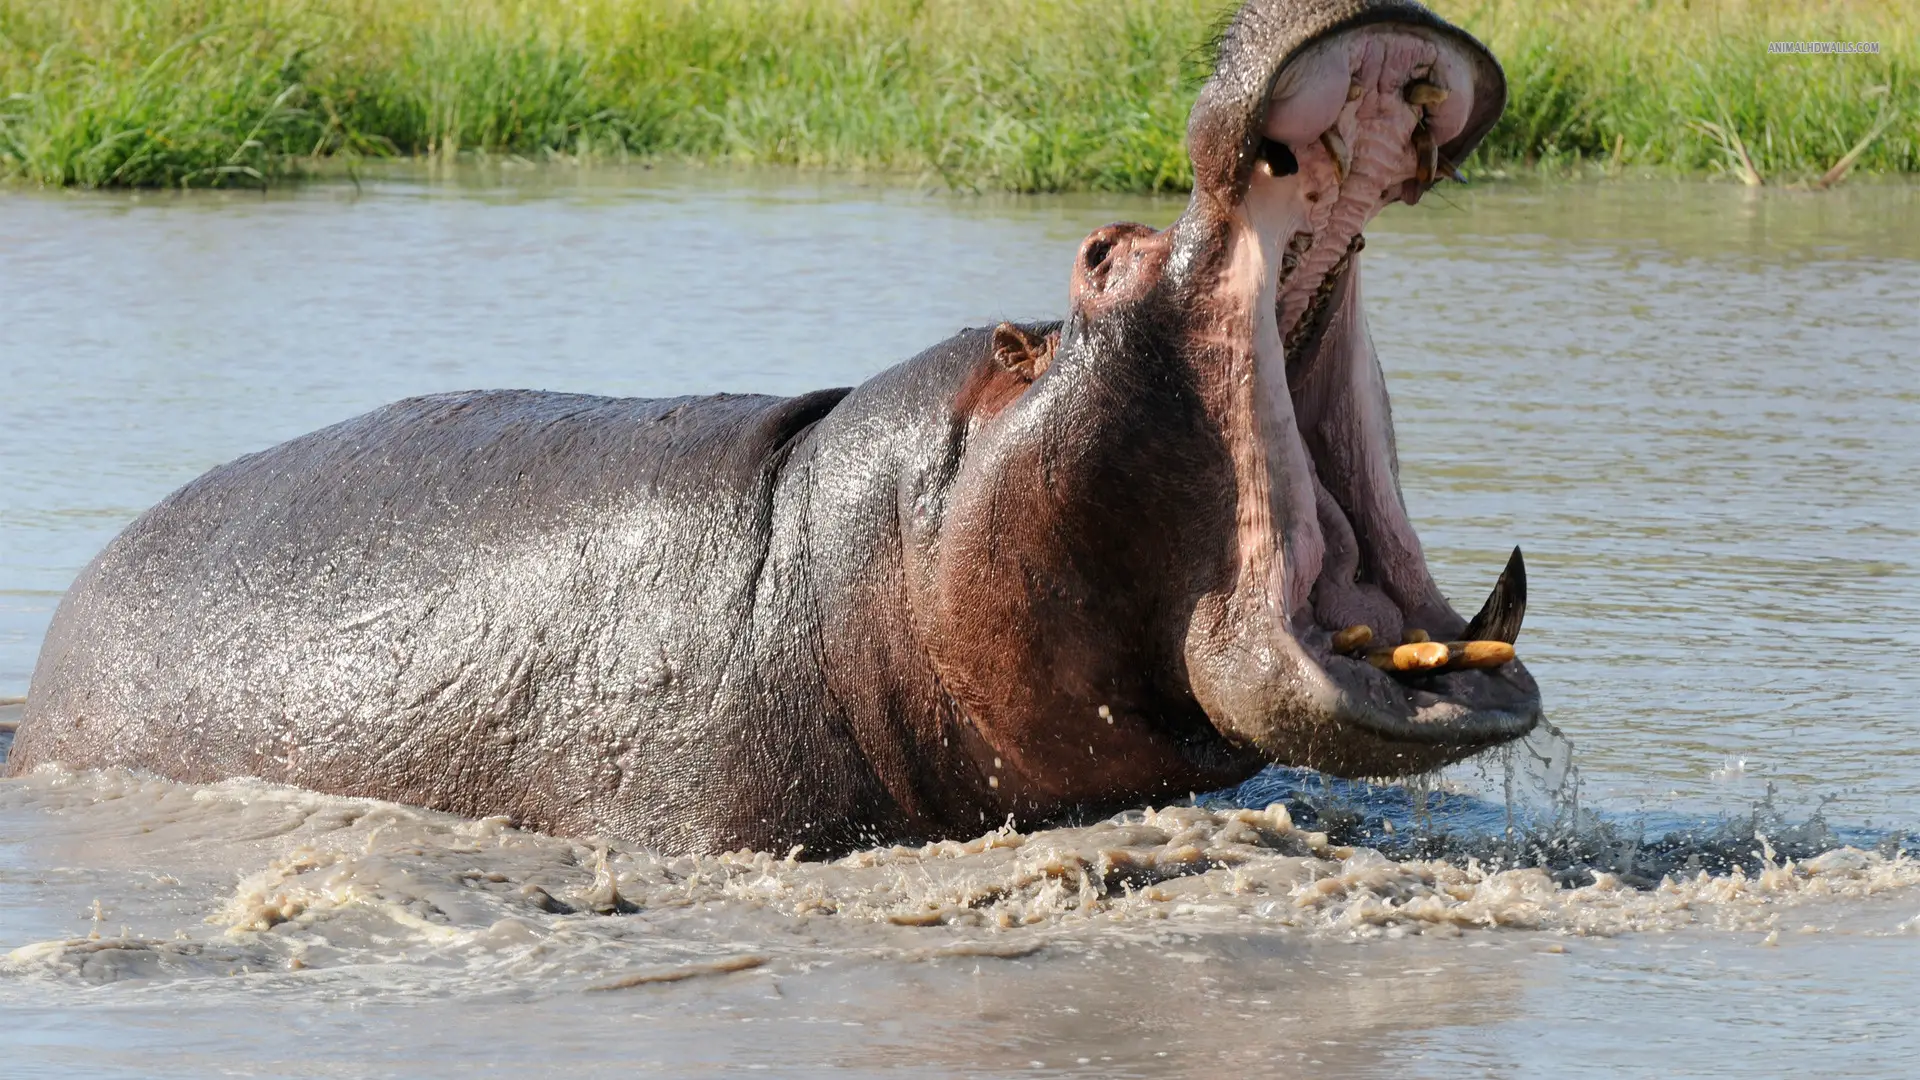 Hippo Dream & Personal Significance